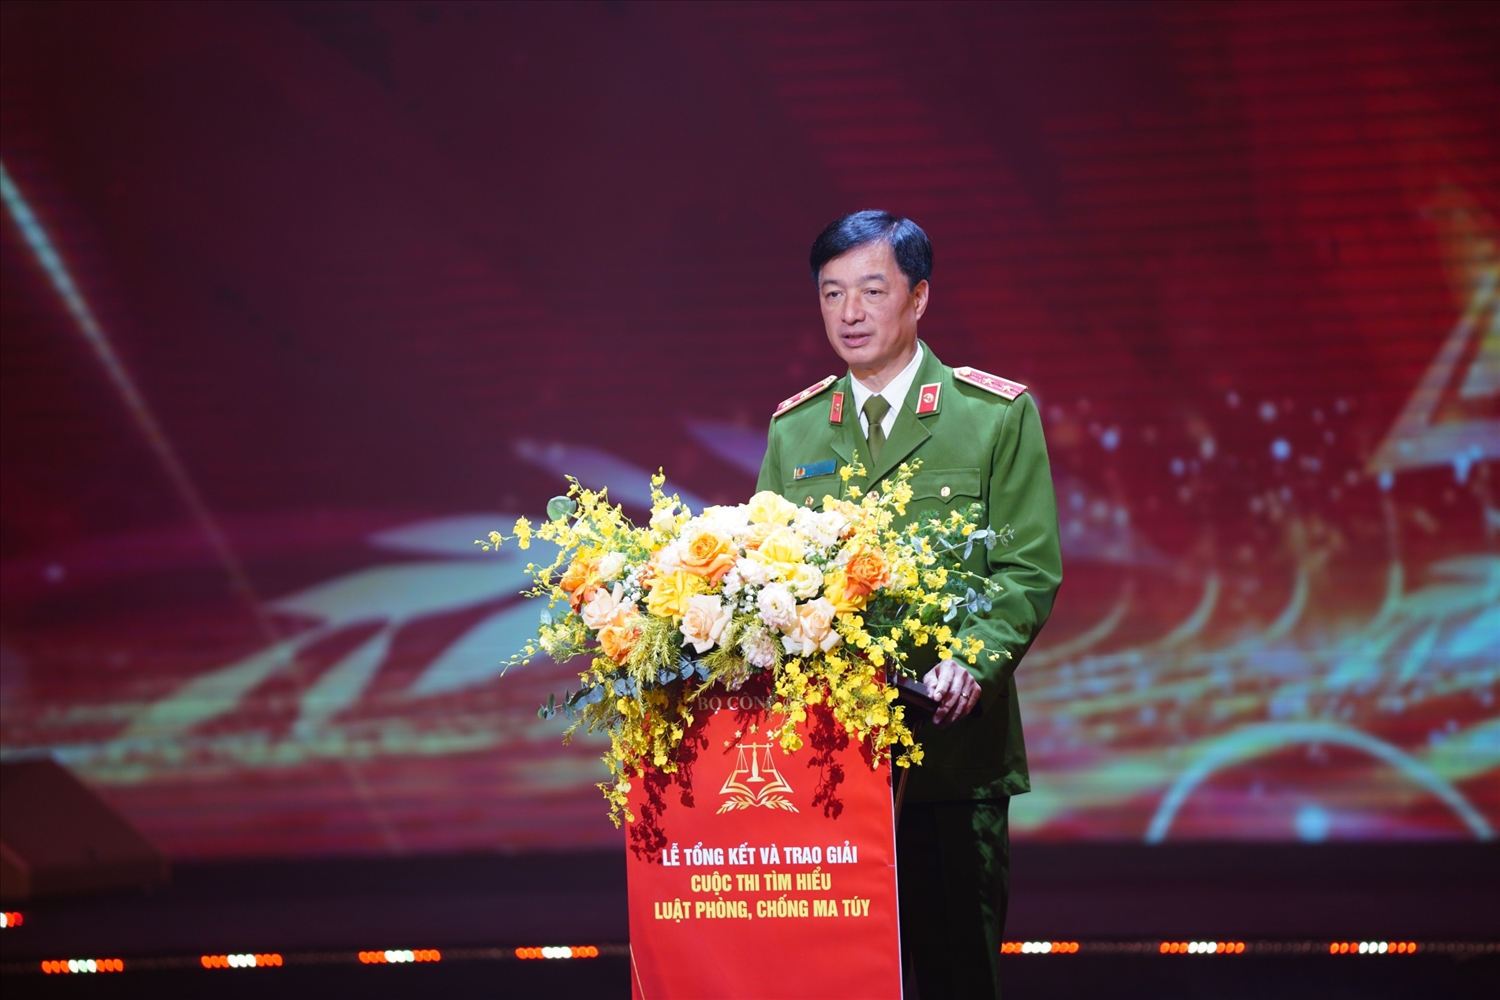 rung tướng Nguyễn Duy Ngọc, Thứ trưởng Bộ Công an phát biểu tại buổi Lễ.